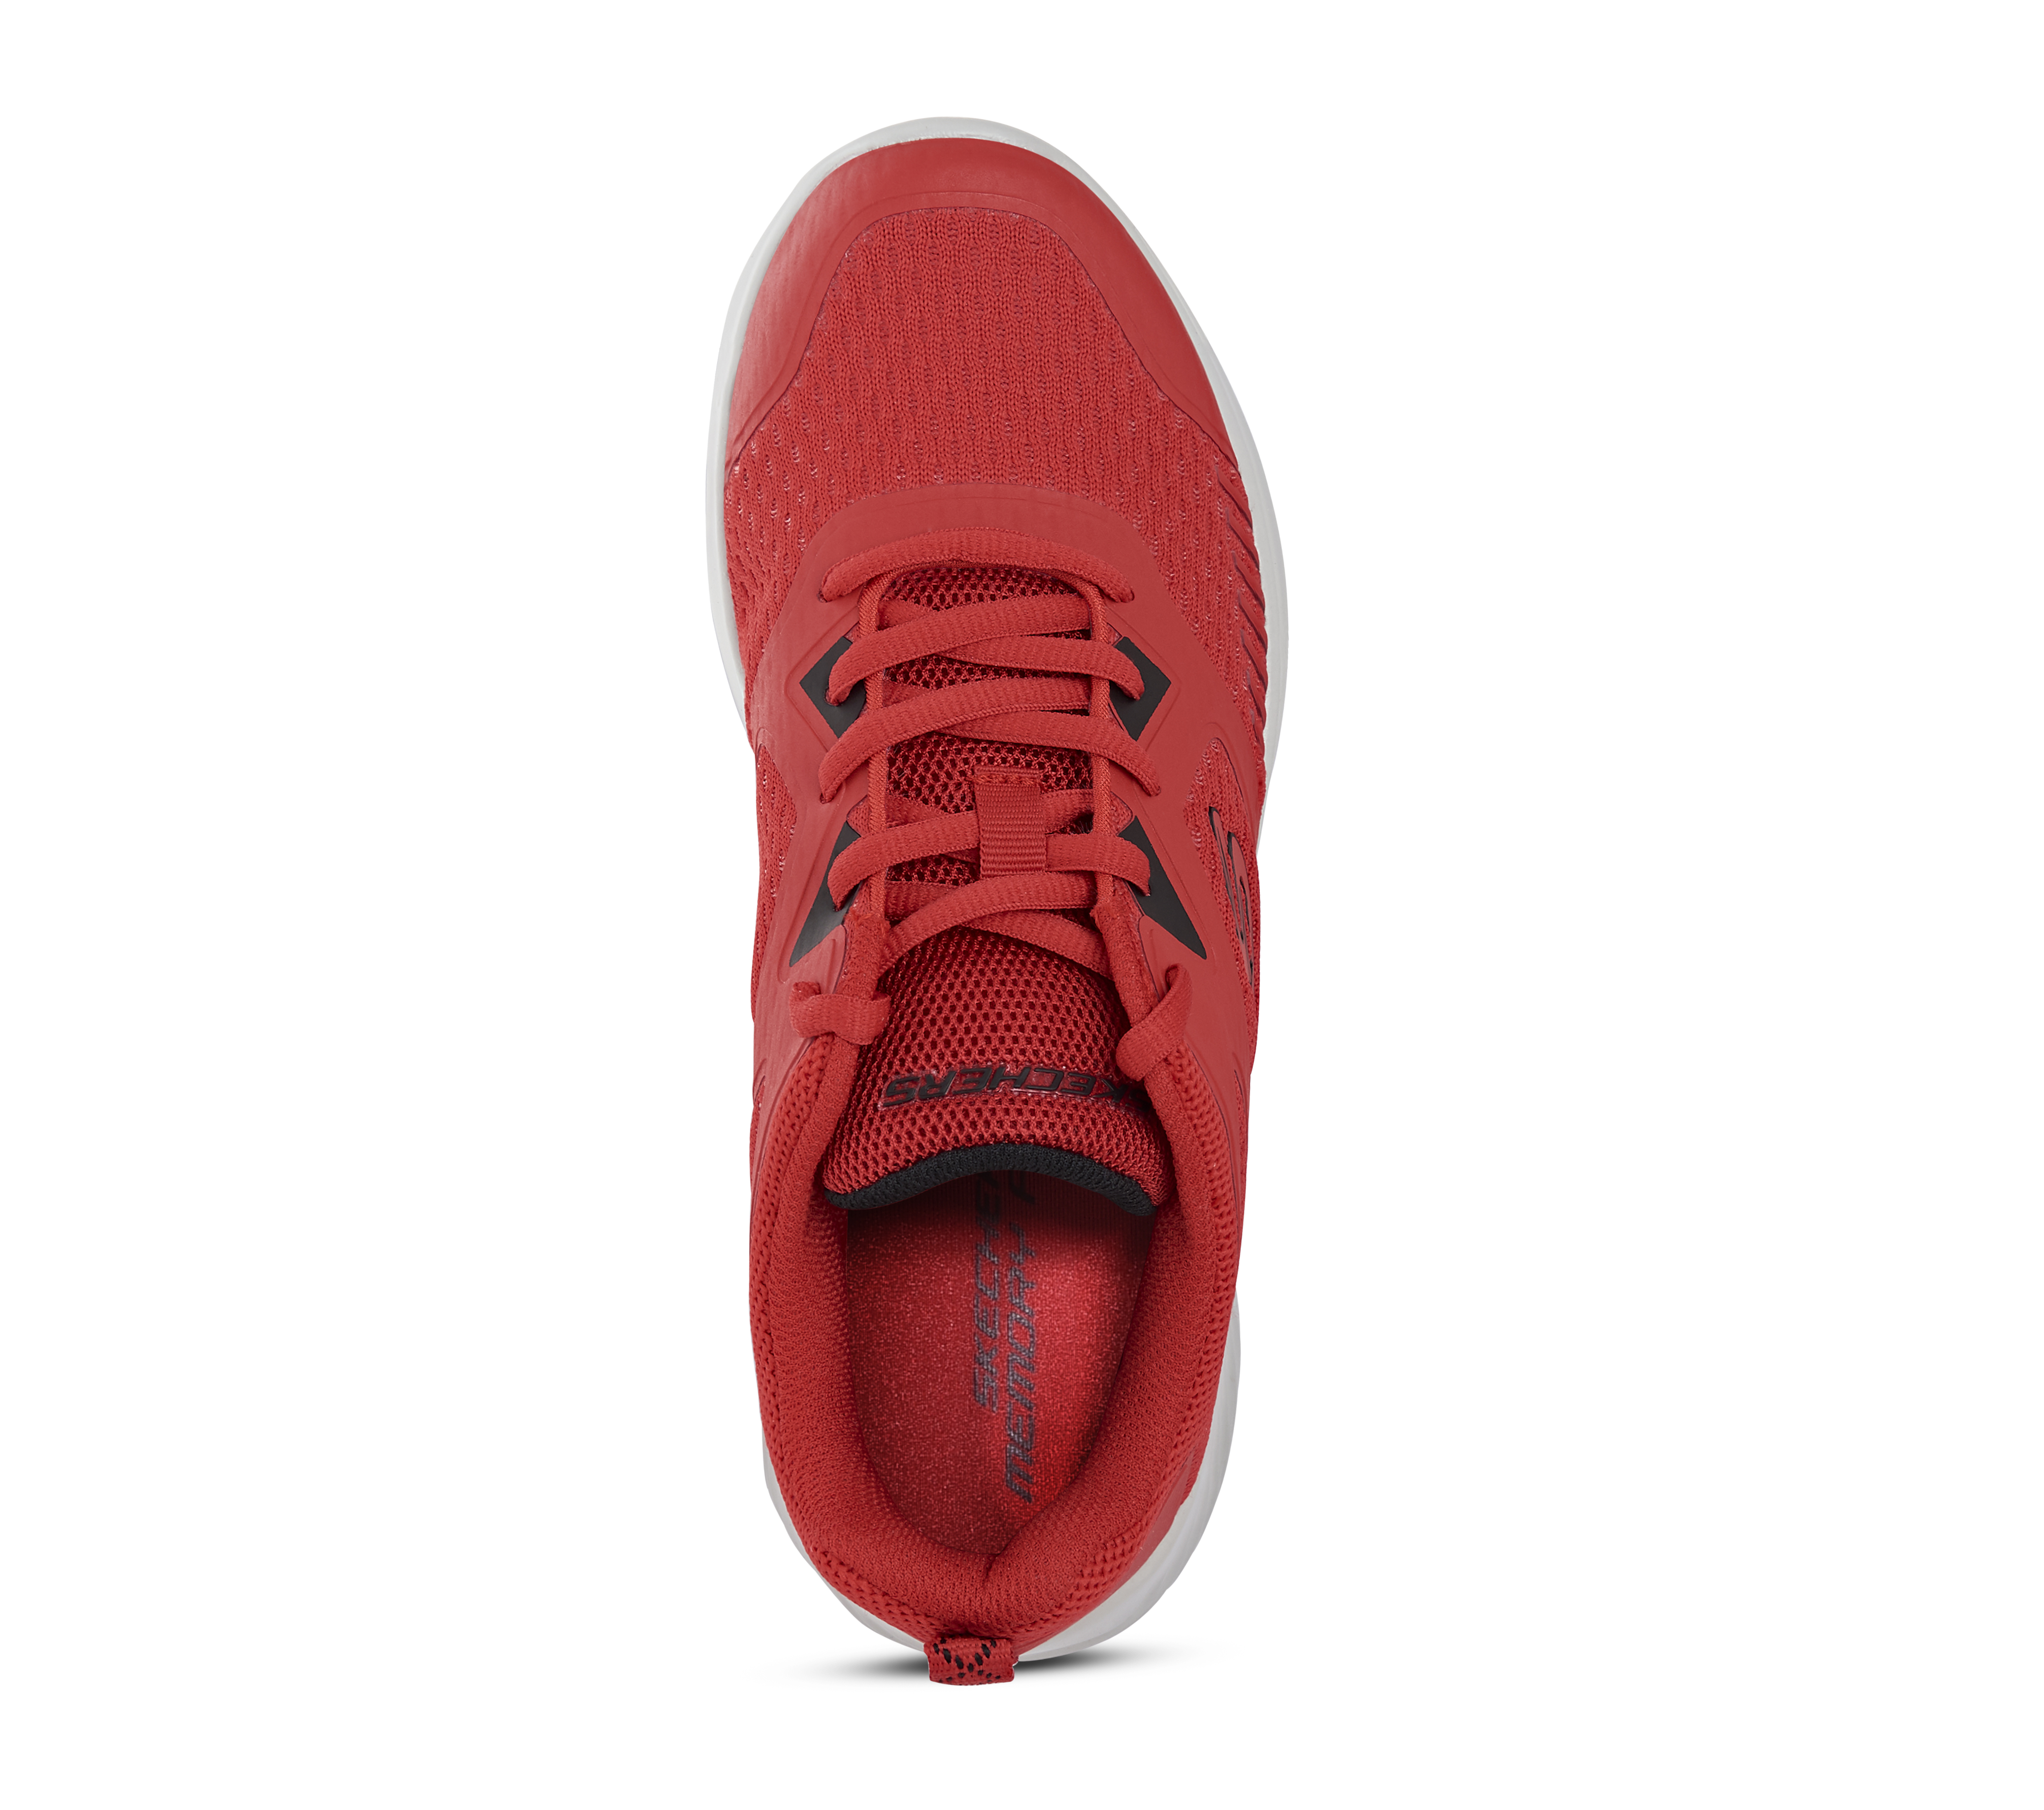 BOUNDER, RED/BLACK Footwear Top View